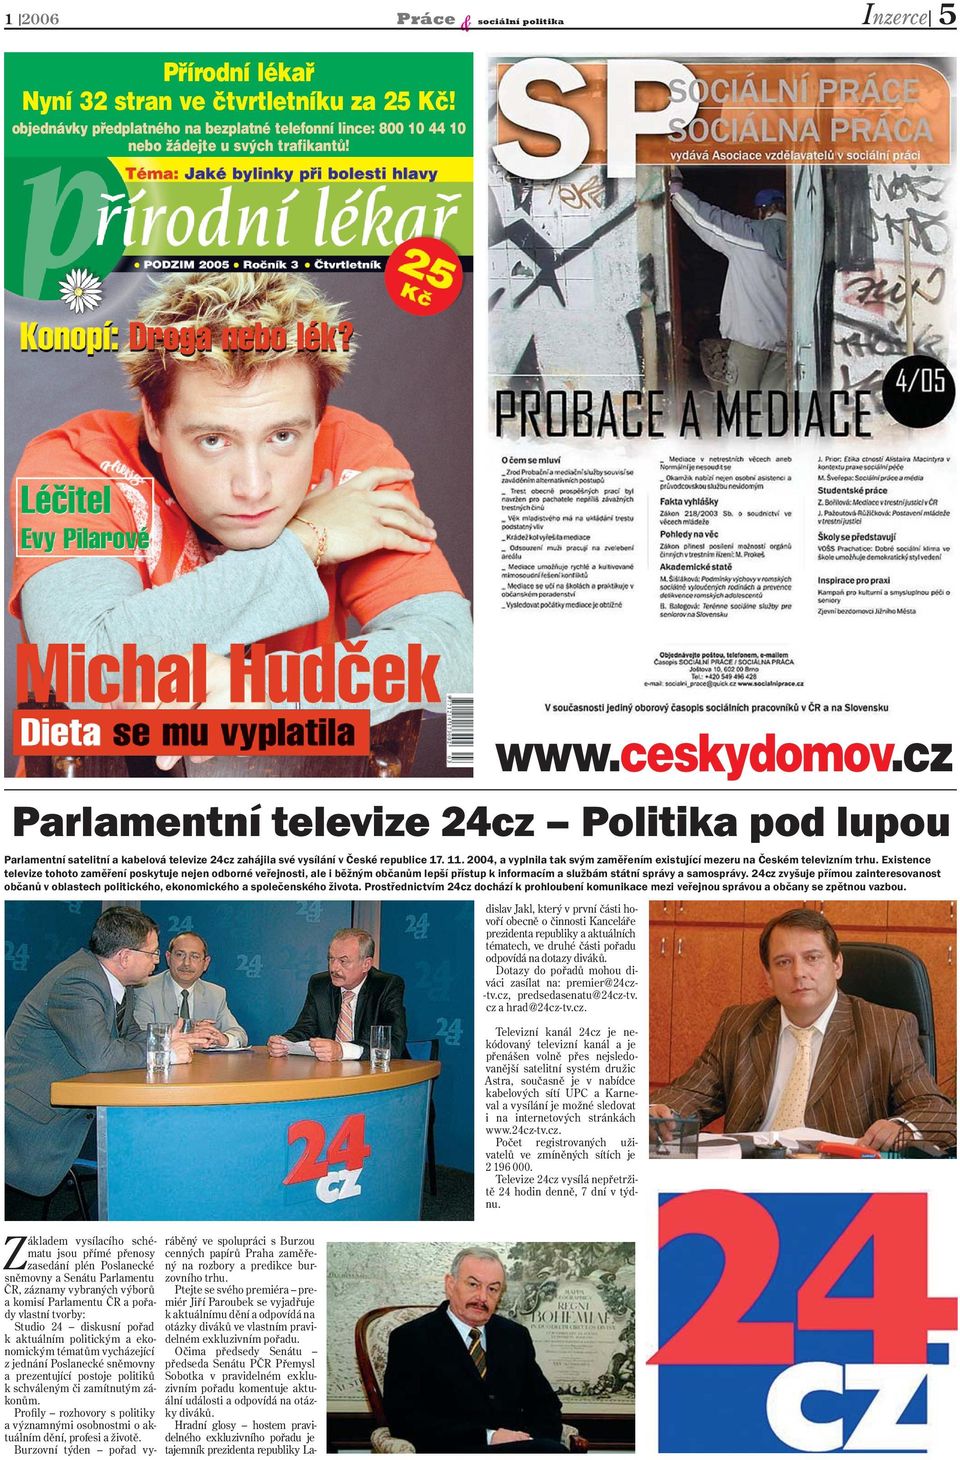 2004, a vyplnila tak svým zaměřením existující mezeru na Českém televizním trhu.